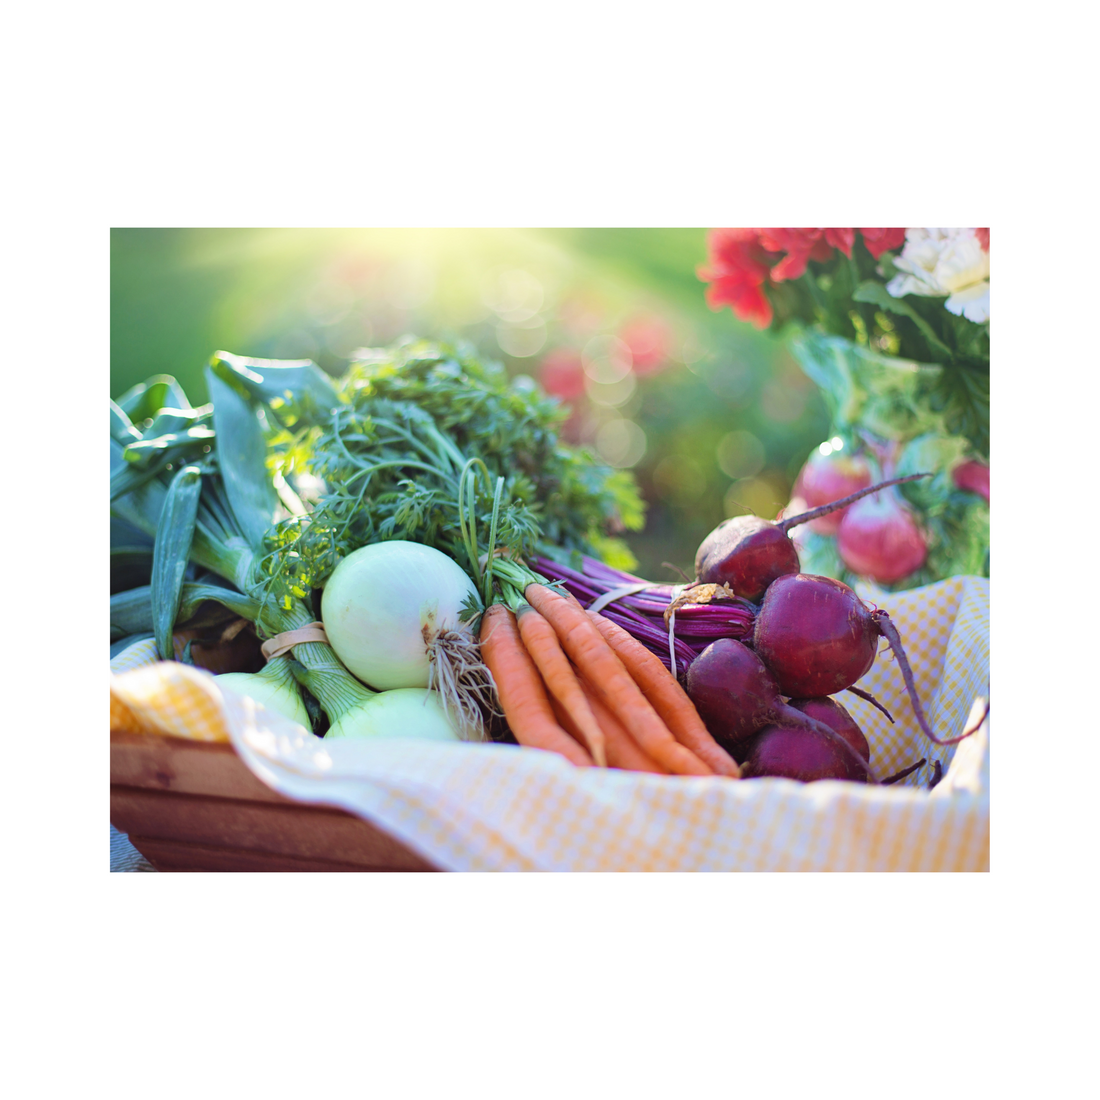 Vegetable Basket - White's Family Farmhouse 